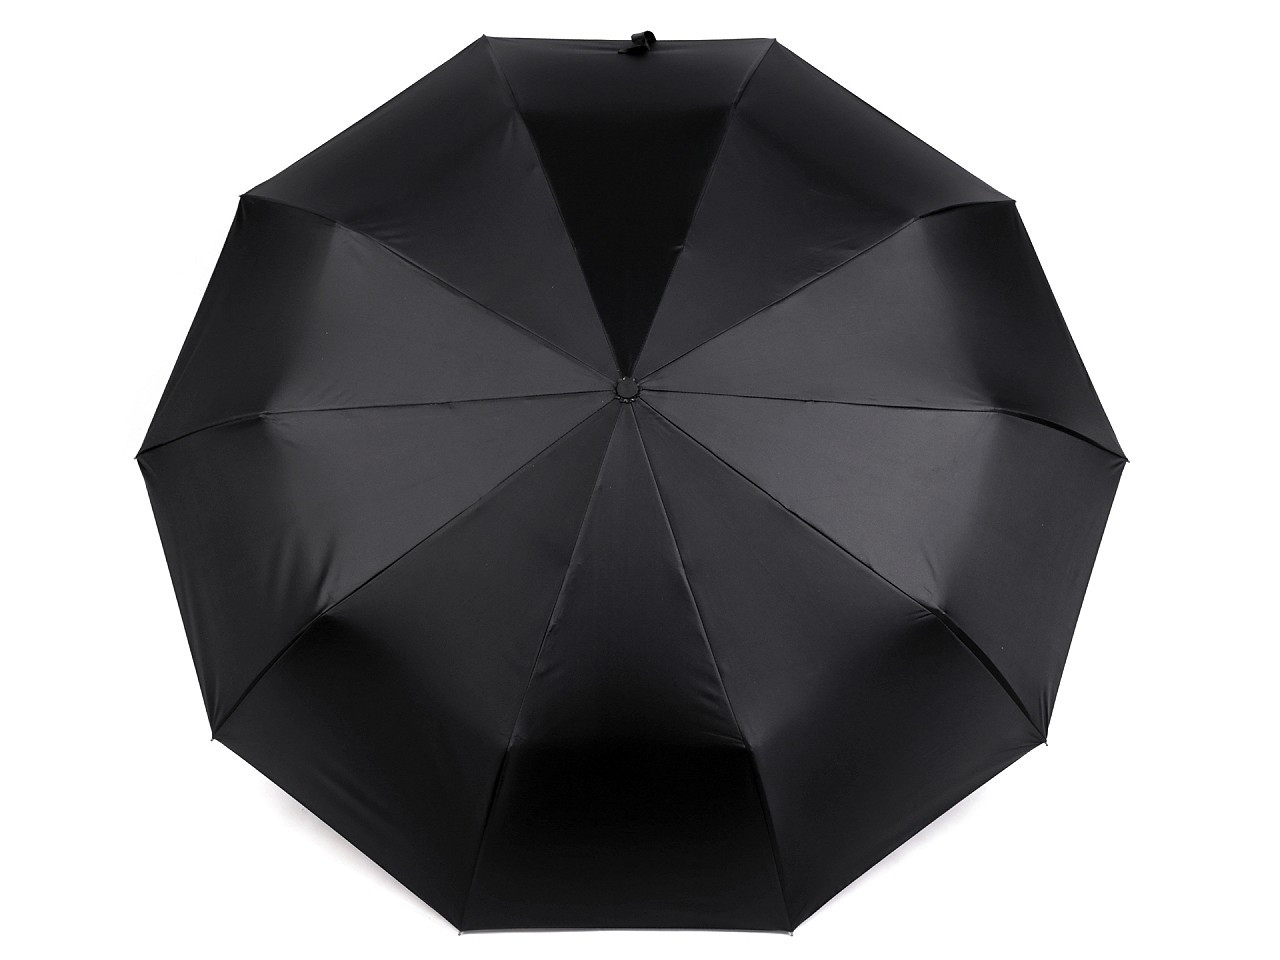 Skládací deštník s led světlem v rukojeti, barva 1 černá